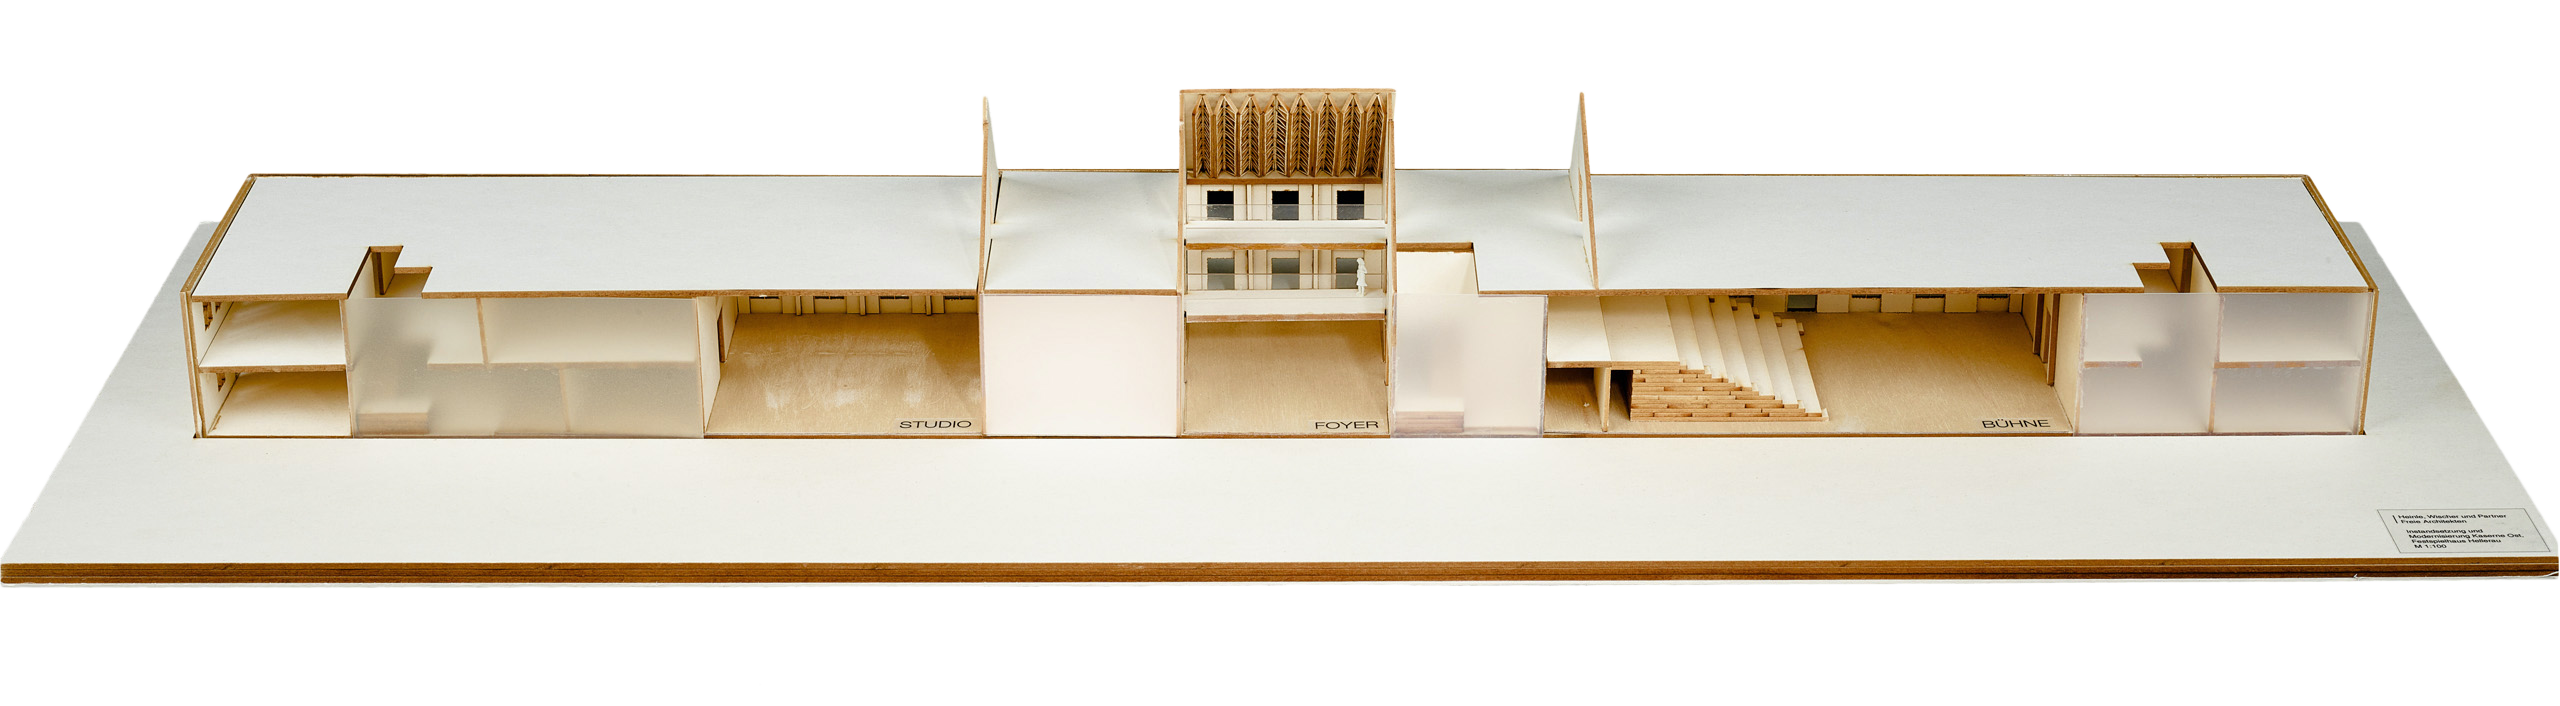 Modell mit geschlossener Fassade und geschlossenem Dach